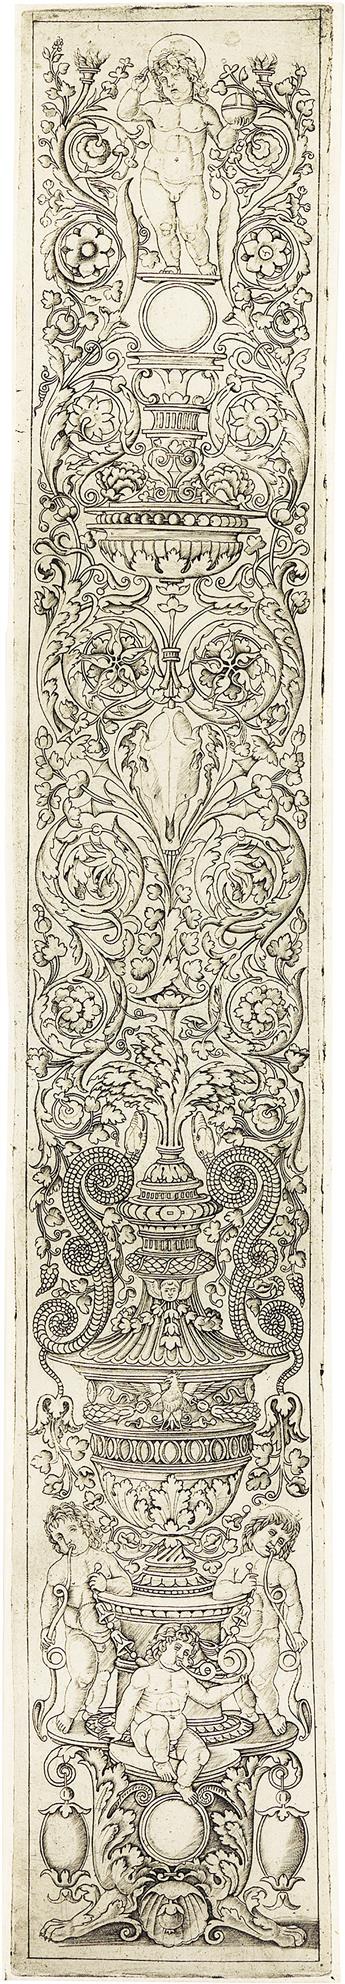 GIOVANNI ANTONIO DA BRESCIA, CALLED ZOAN ANDREA (after Giovanni Pietro da Birago) Two ornamental panel engravings